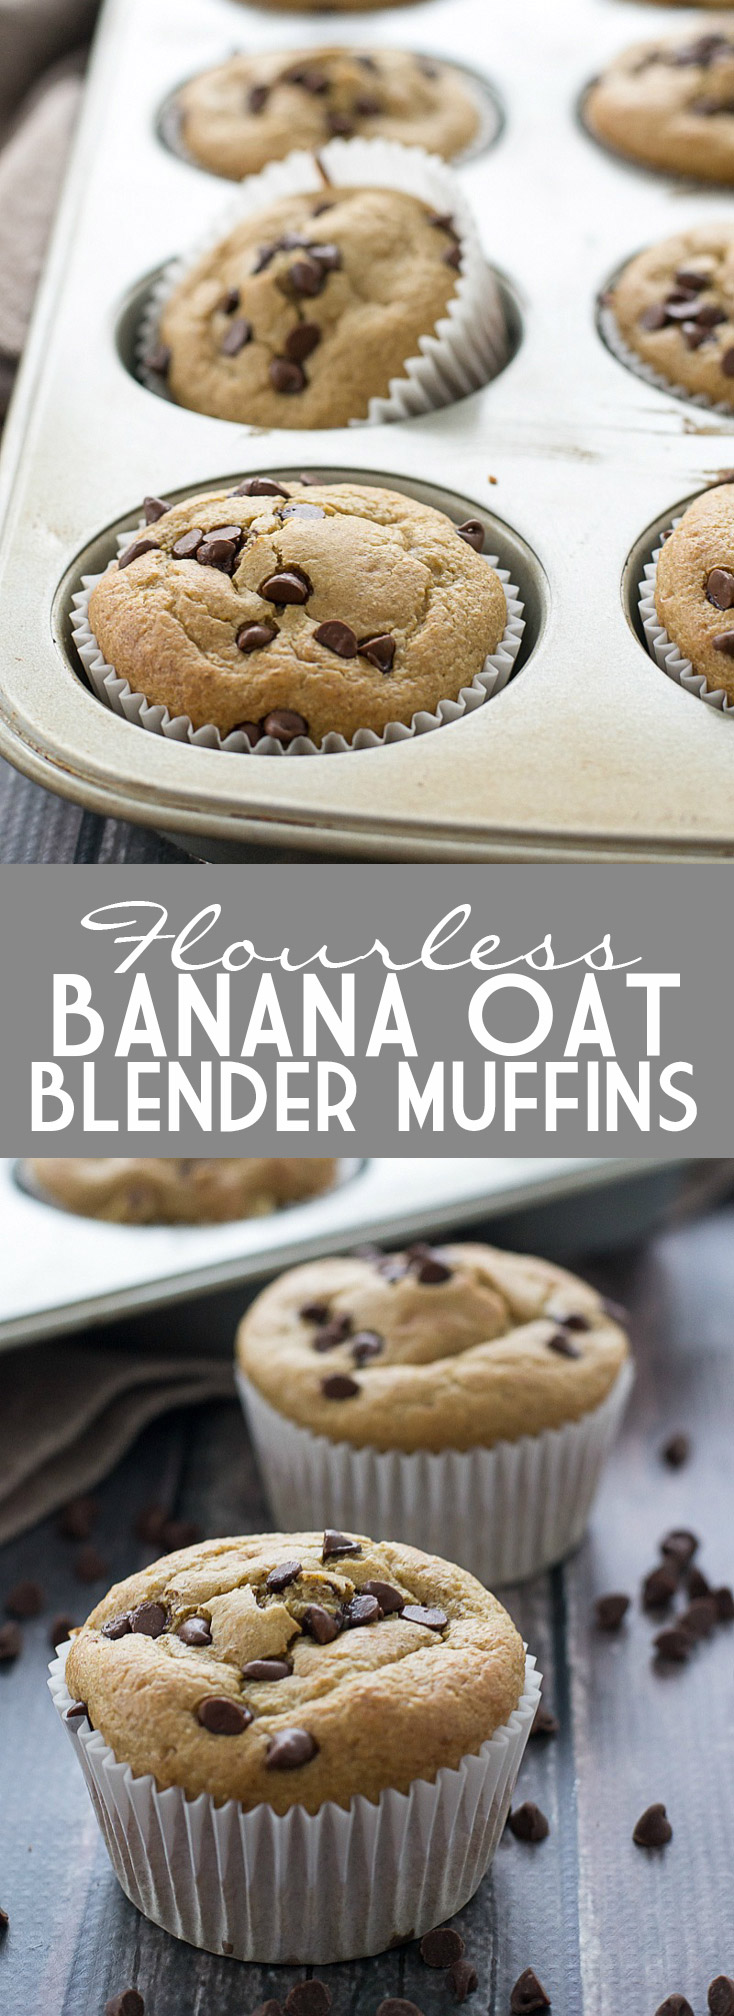 Flourless Banana Oat Blender Muffins | www.motherthyme.com